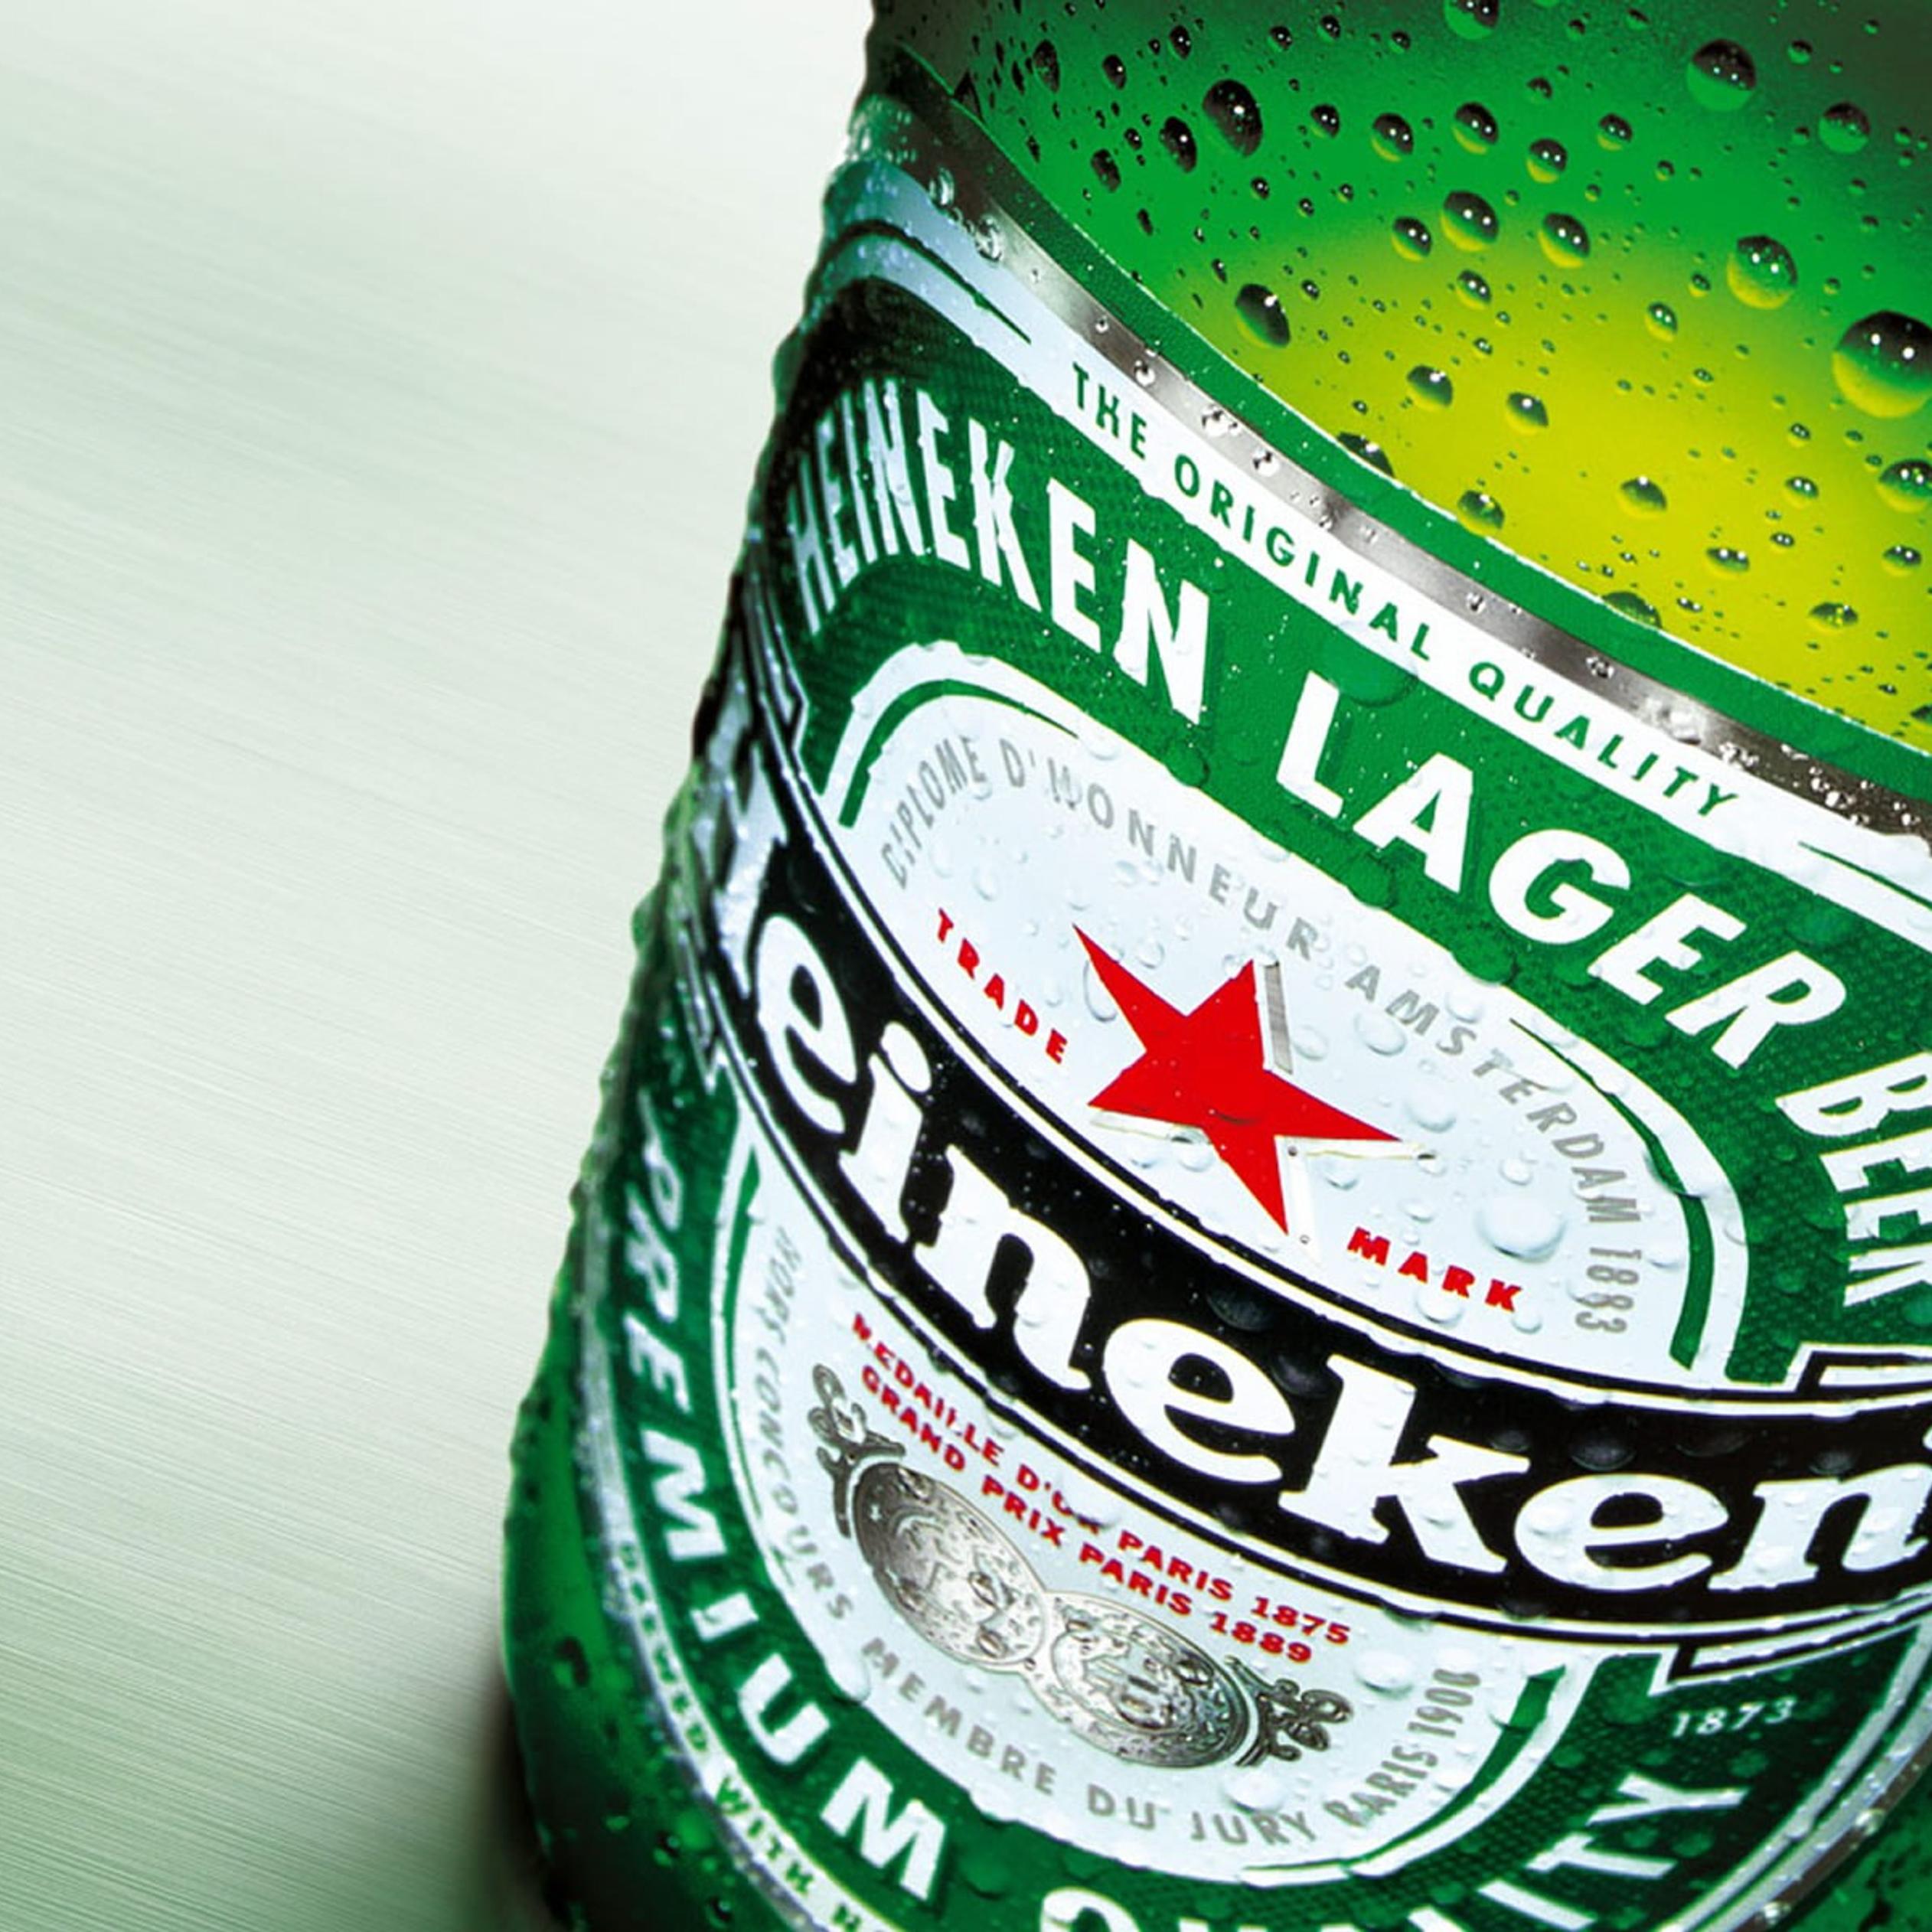 Heineken cold beer bottle